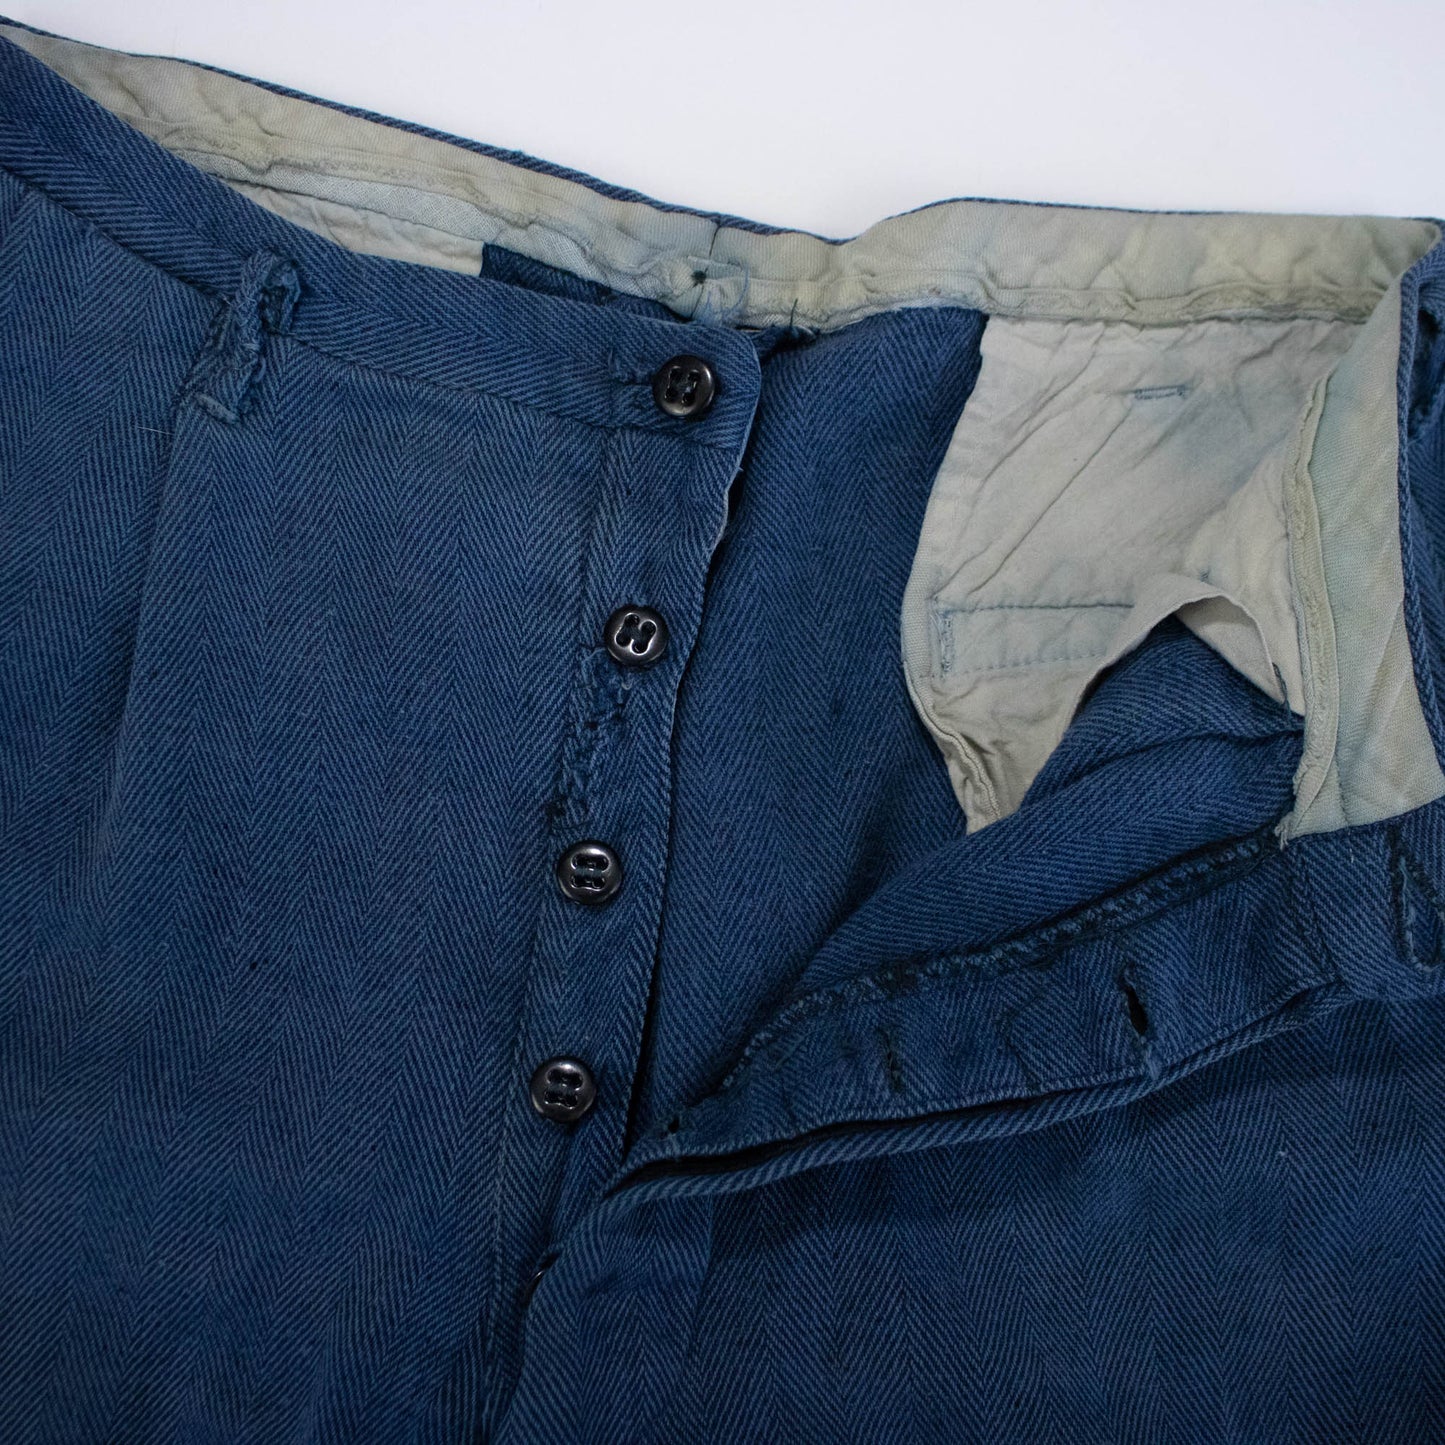 30s/40s Herringbone Wool Blend Trousers